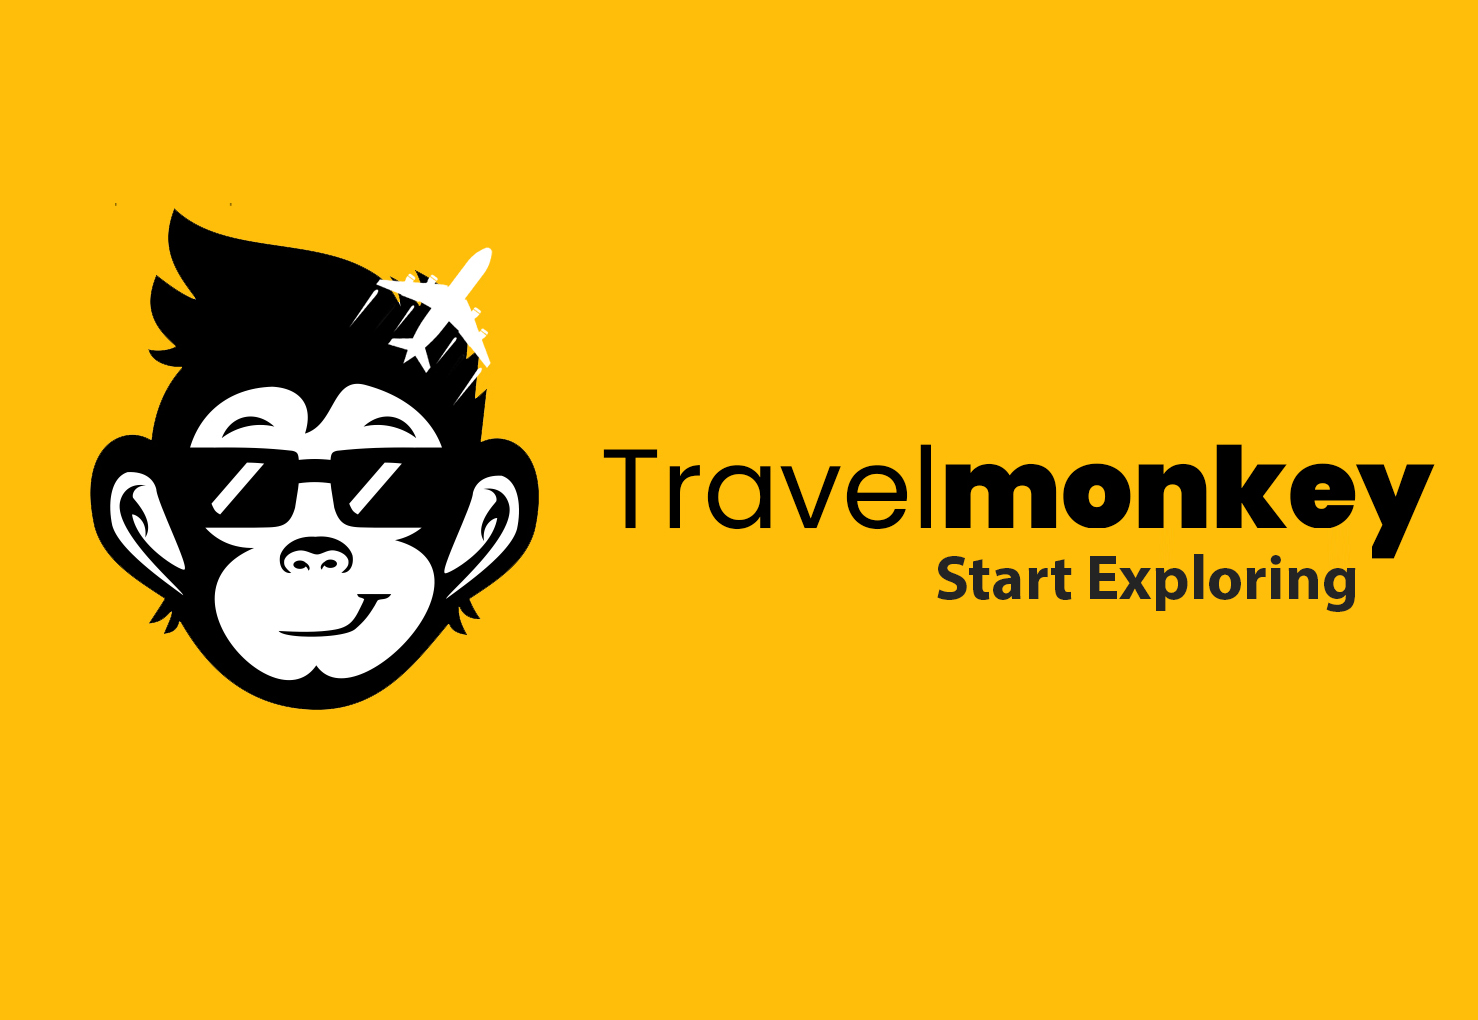 a travel monkey